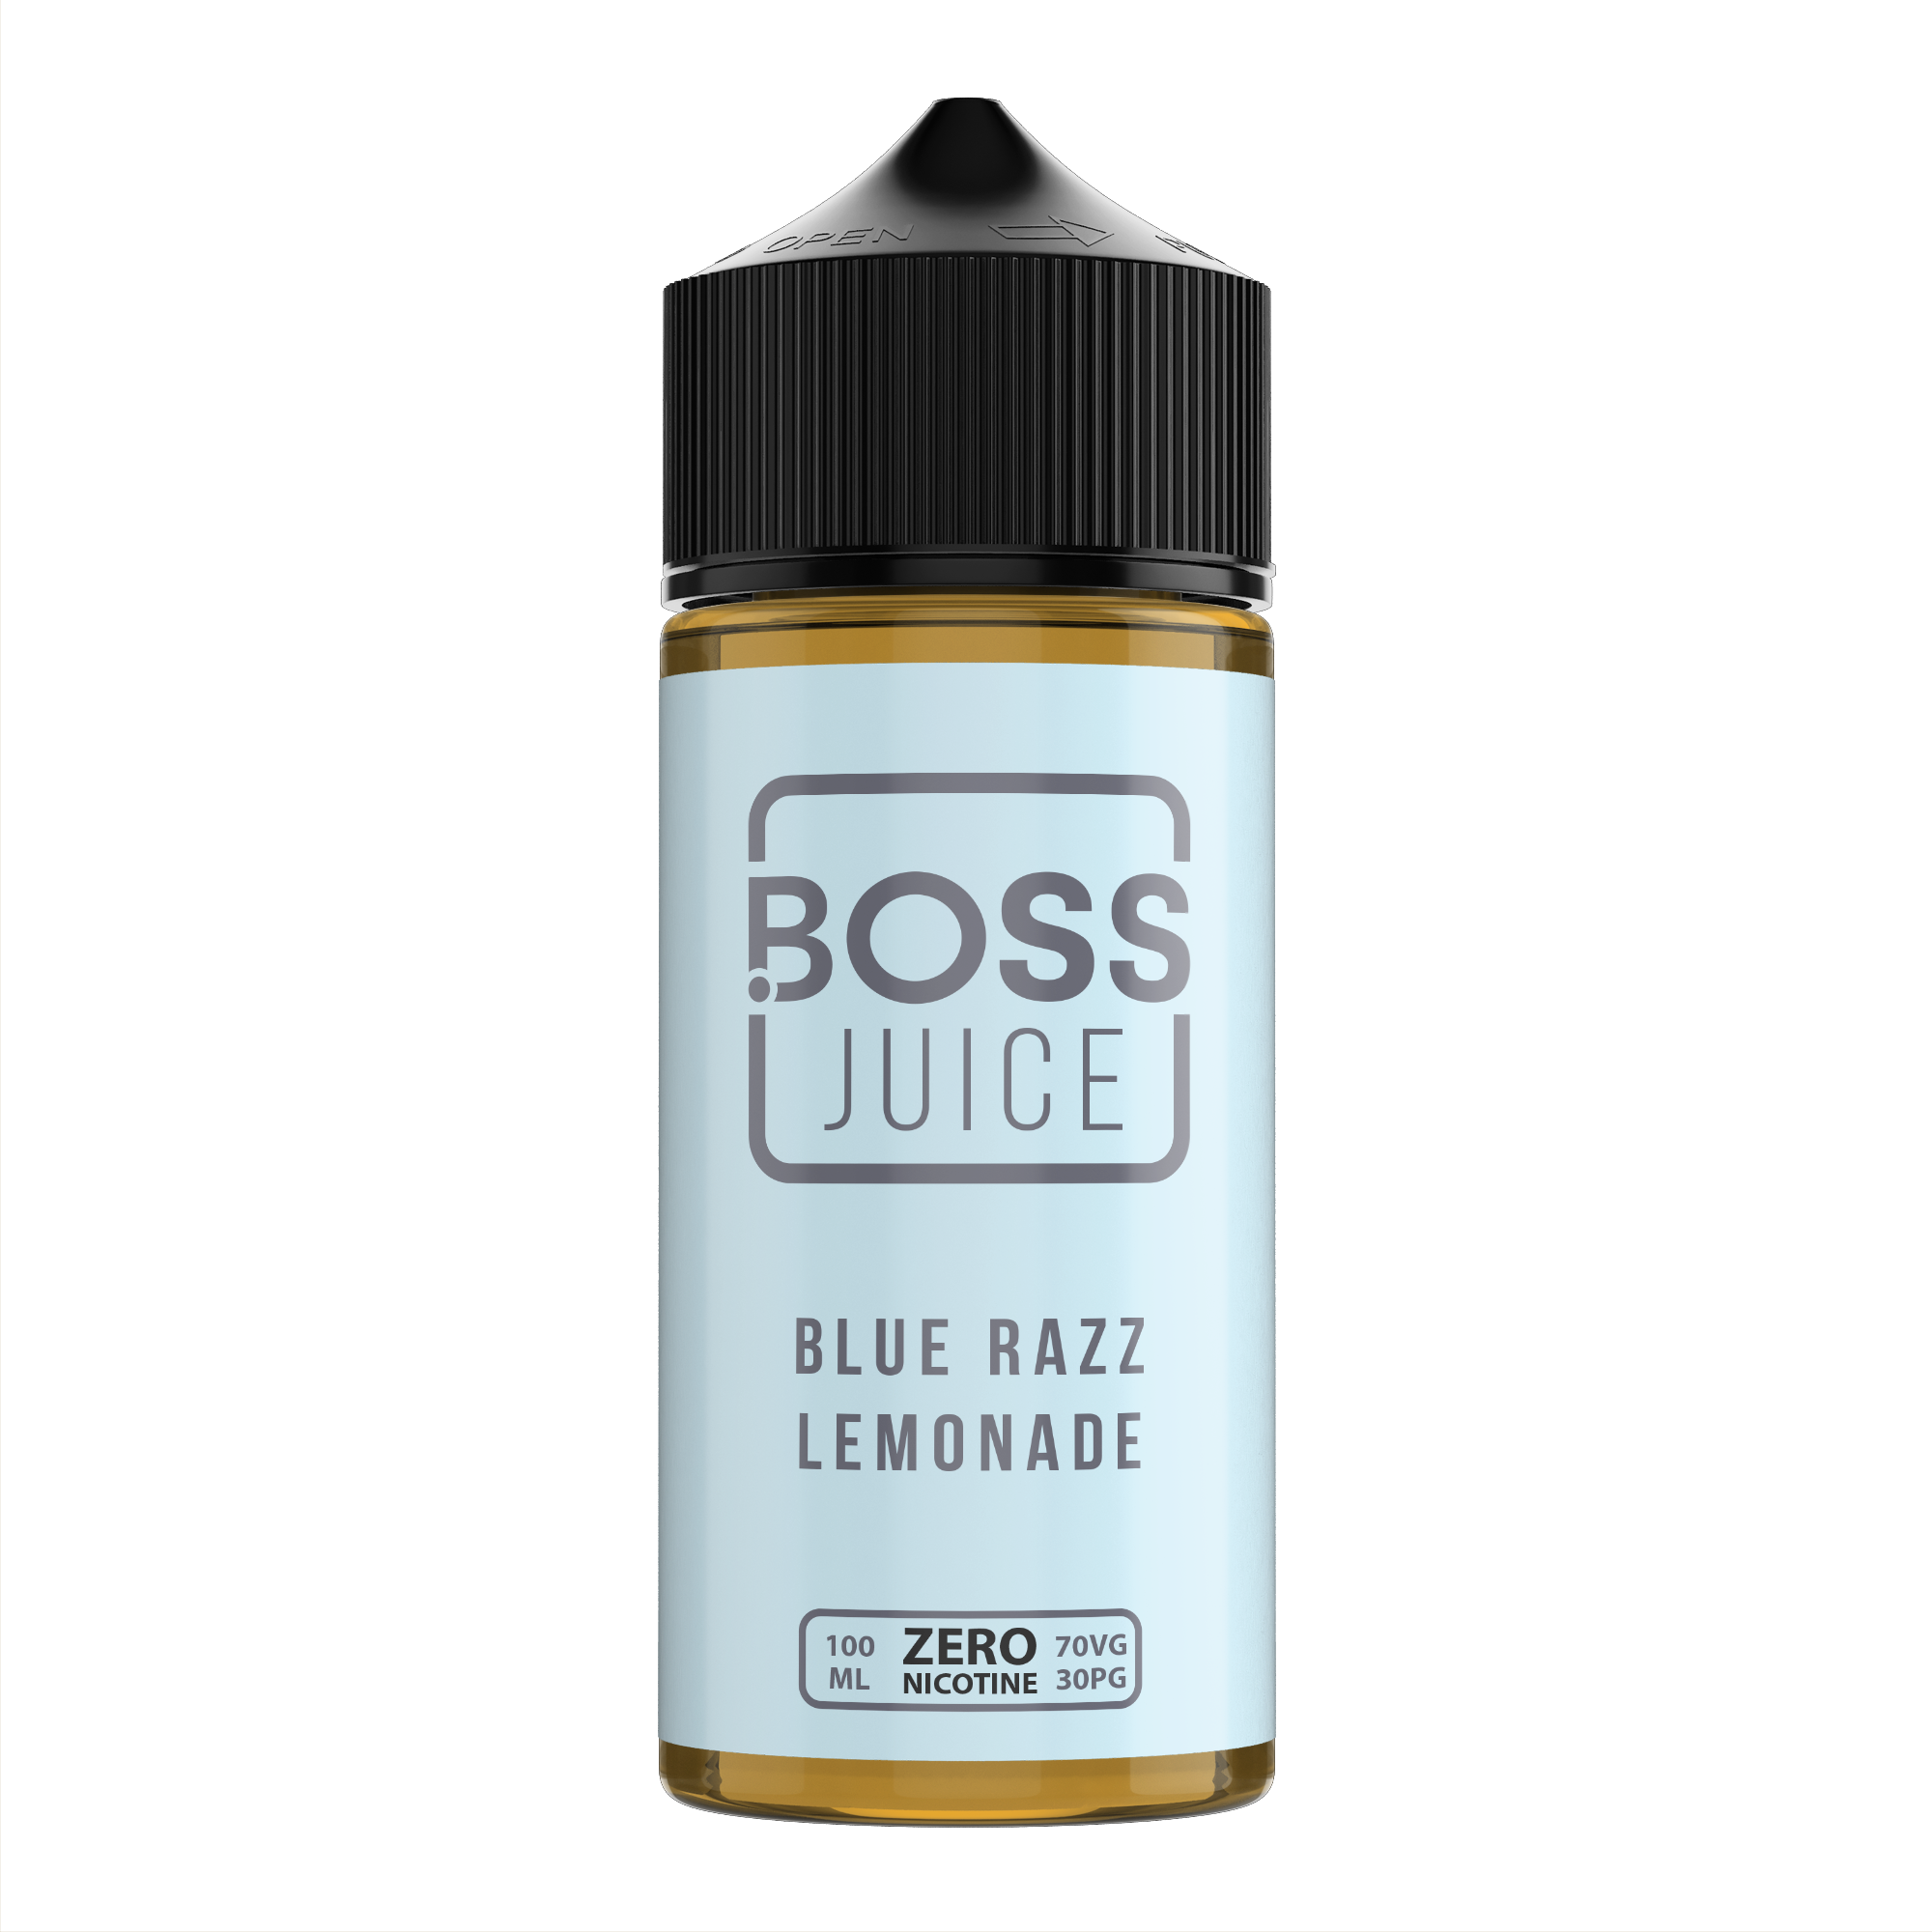 Blue razz lemonade 100ml by Boss Juice